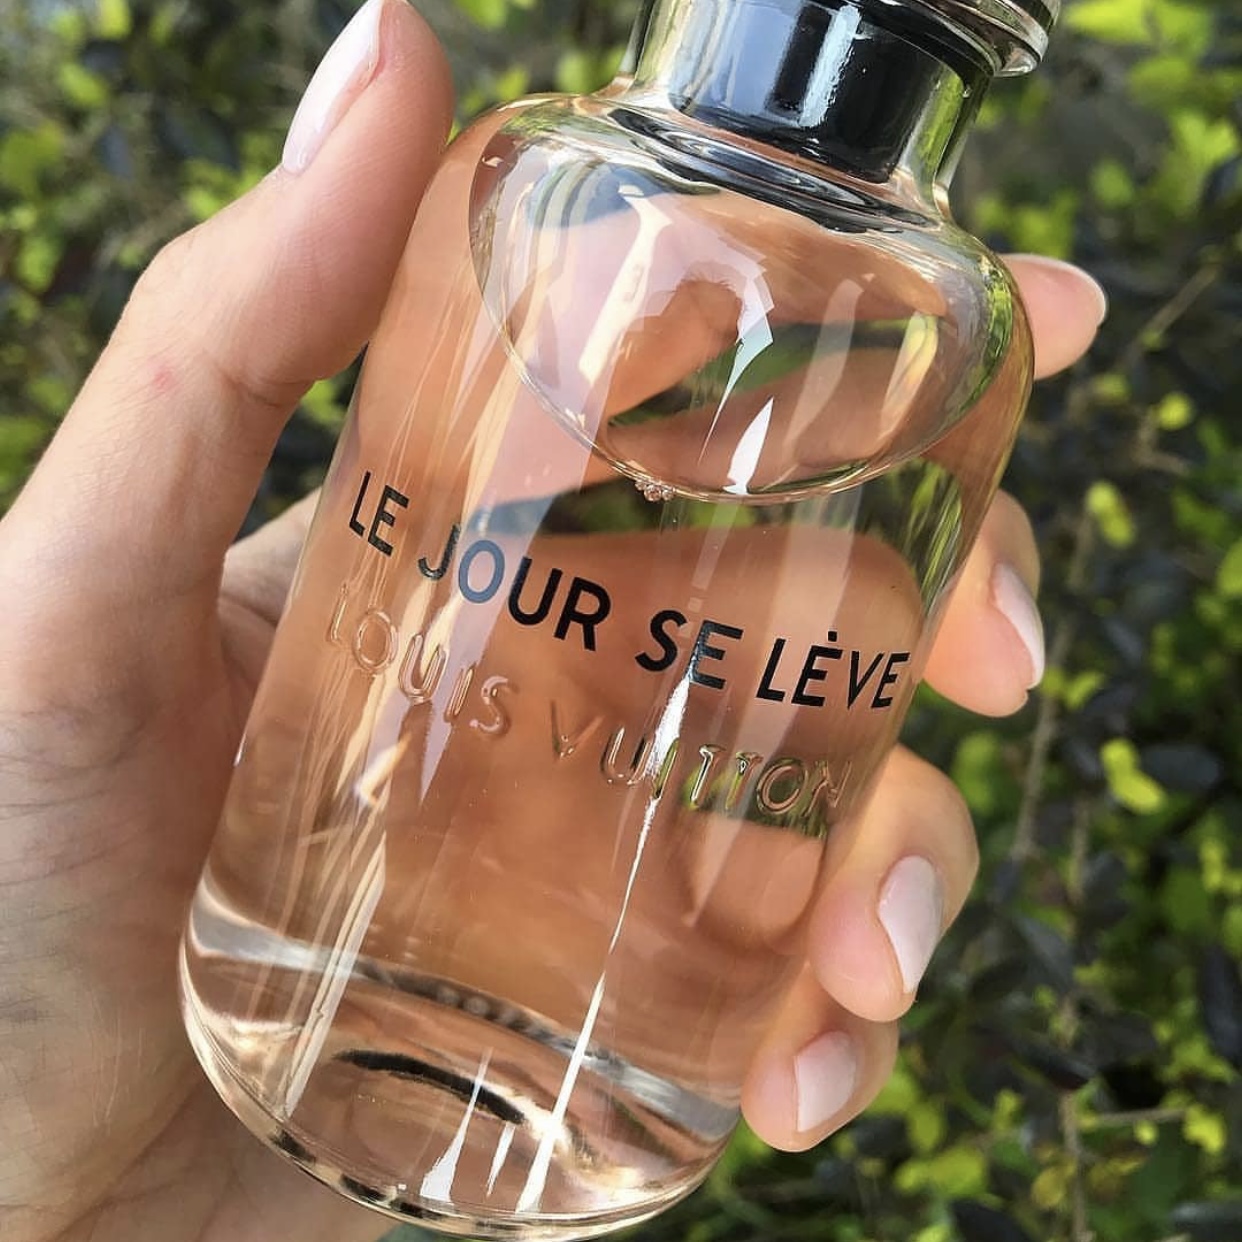 Louis Vuitton Le Jour Se Leve Review, Price, Coupon - PerfumeDiary